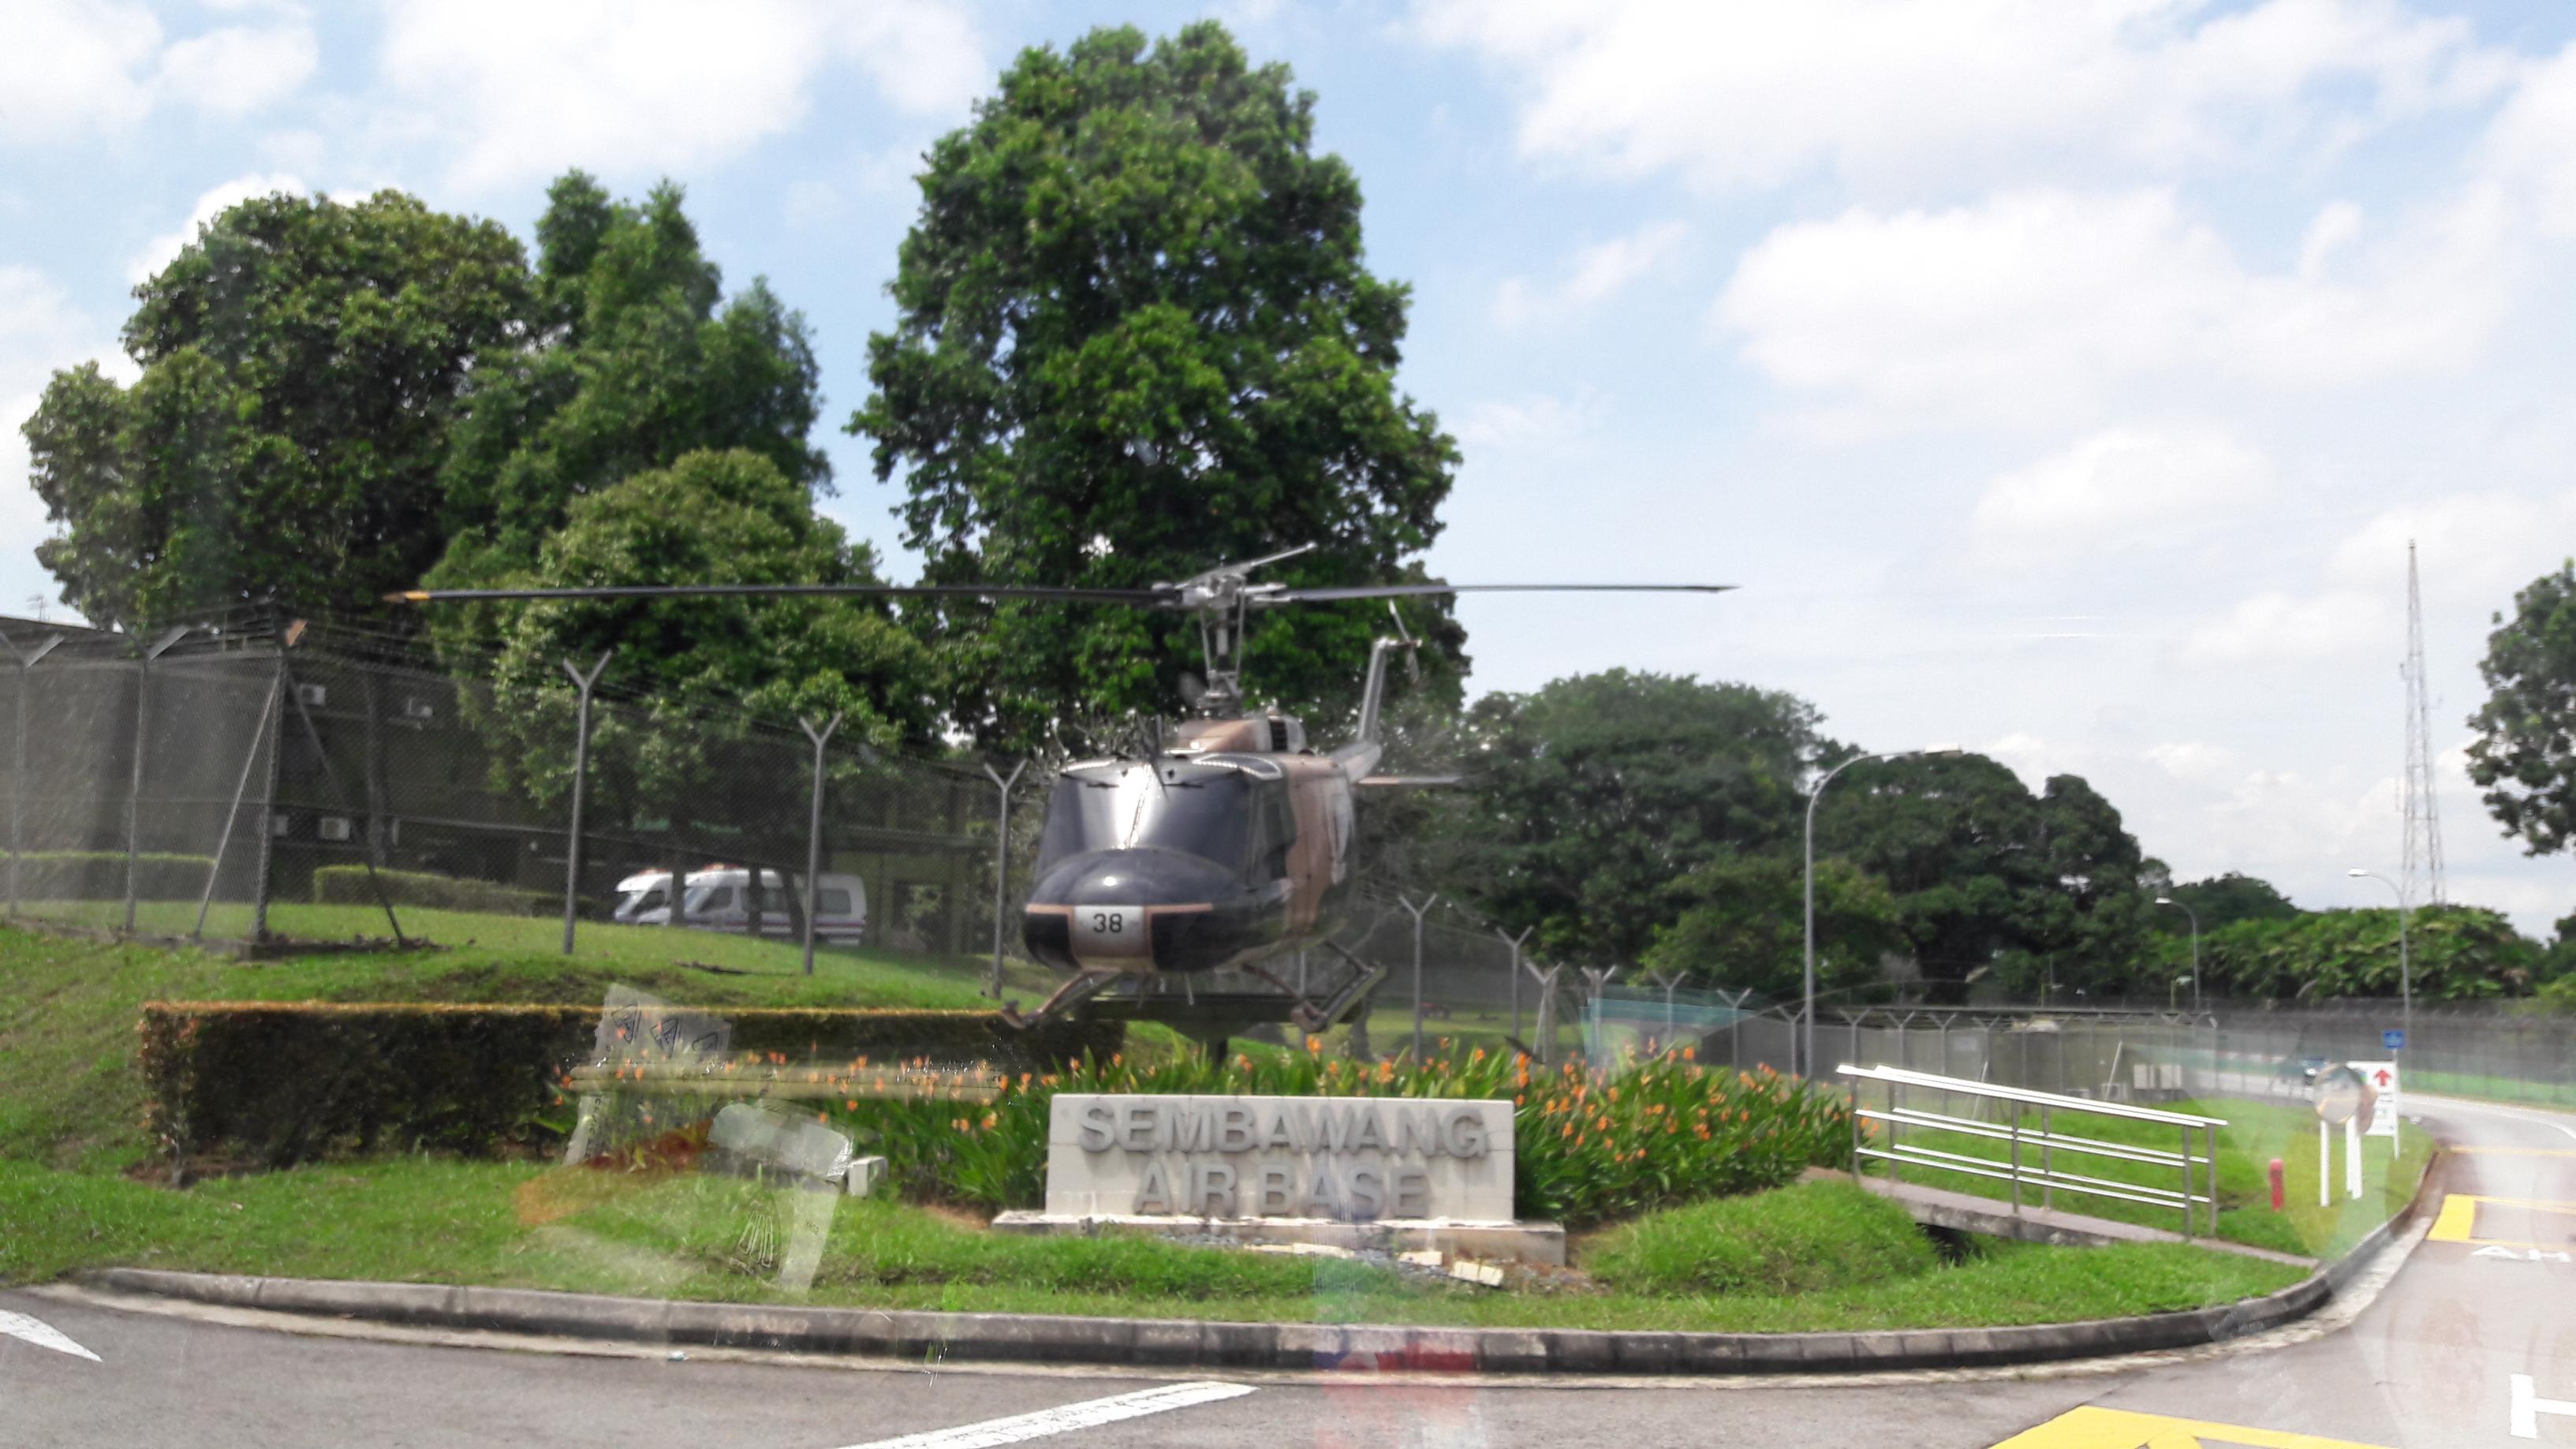 Naam: UH-1 , Sembawang Air Base..jpg
Bekeken: 400
Grootte: 518,1 KB